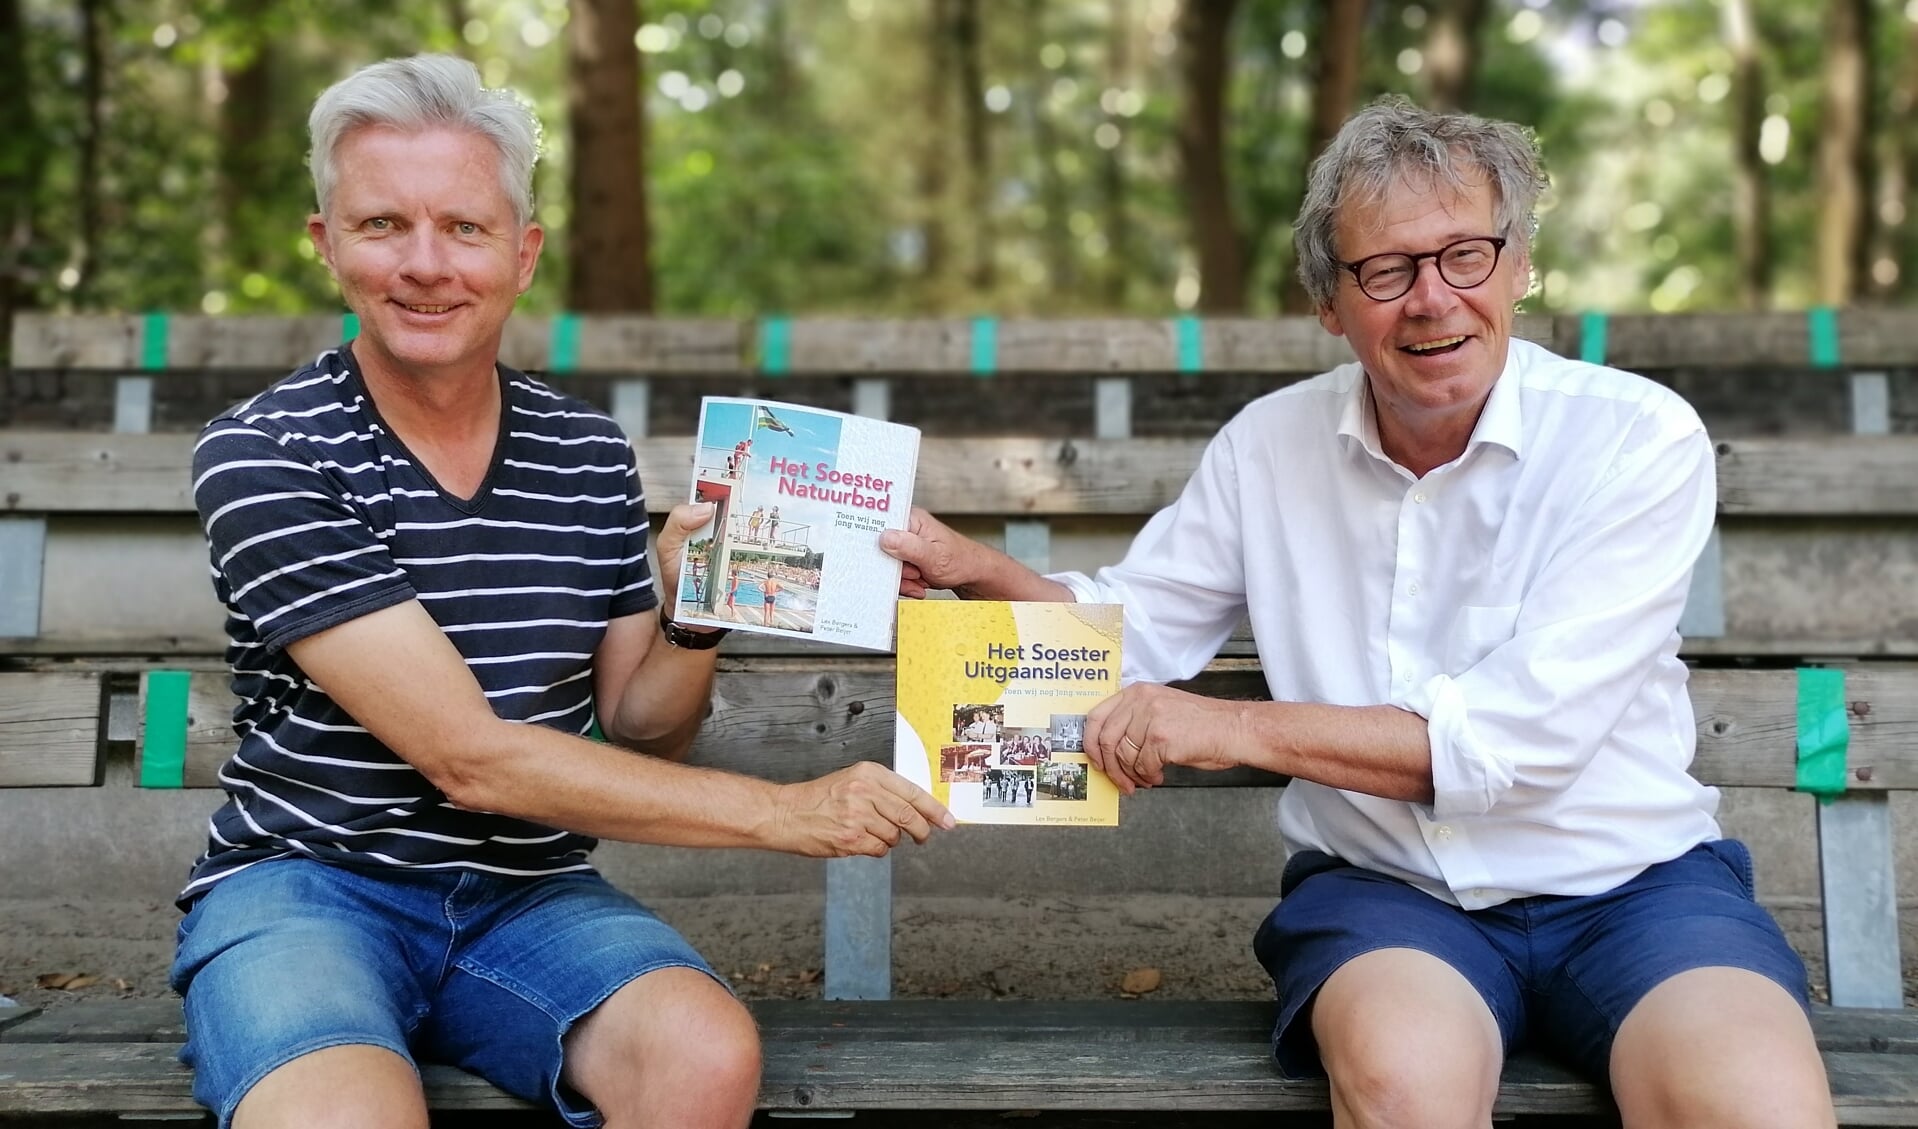 Peter Beijer (links) en Lex Bergers. Het Soester Natuurbad en Soester Uitgaansleven zijn t/m 31 augustus te koop voor € 19,95 ieder.